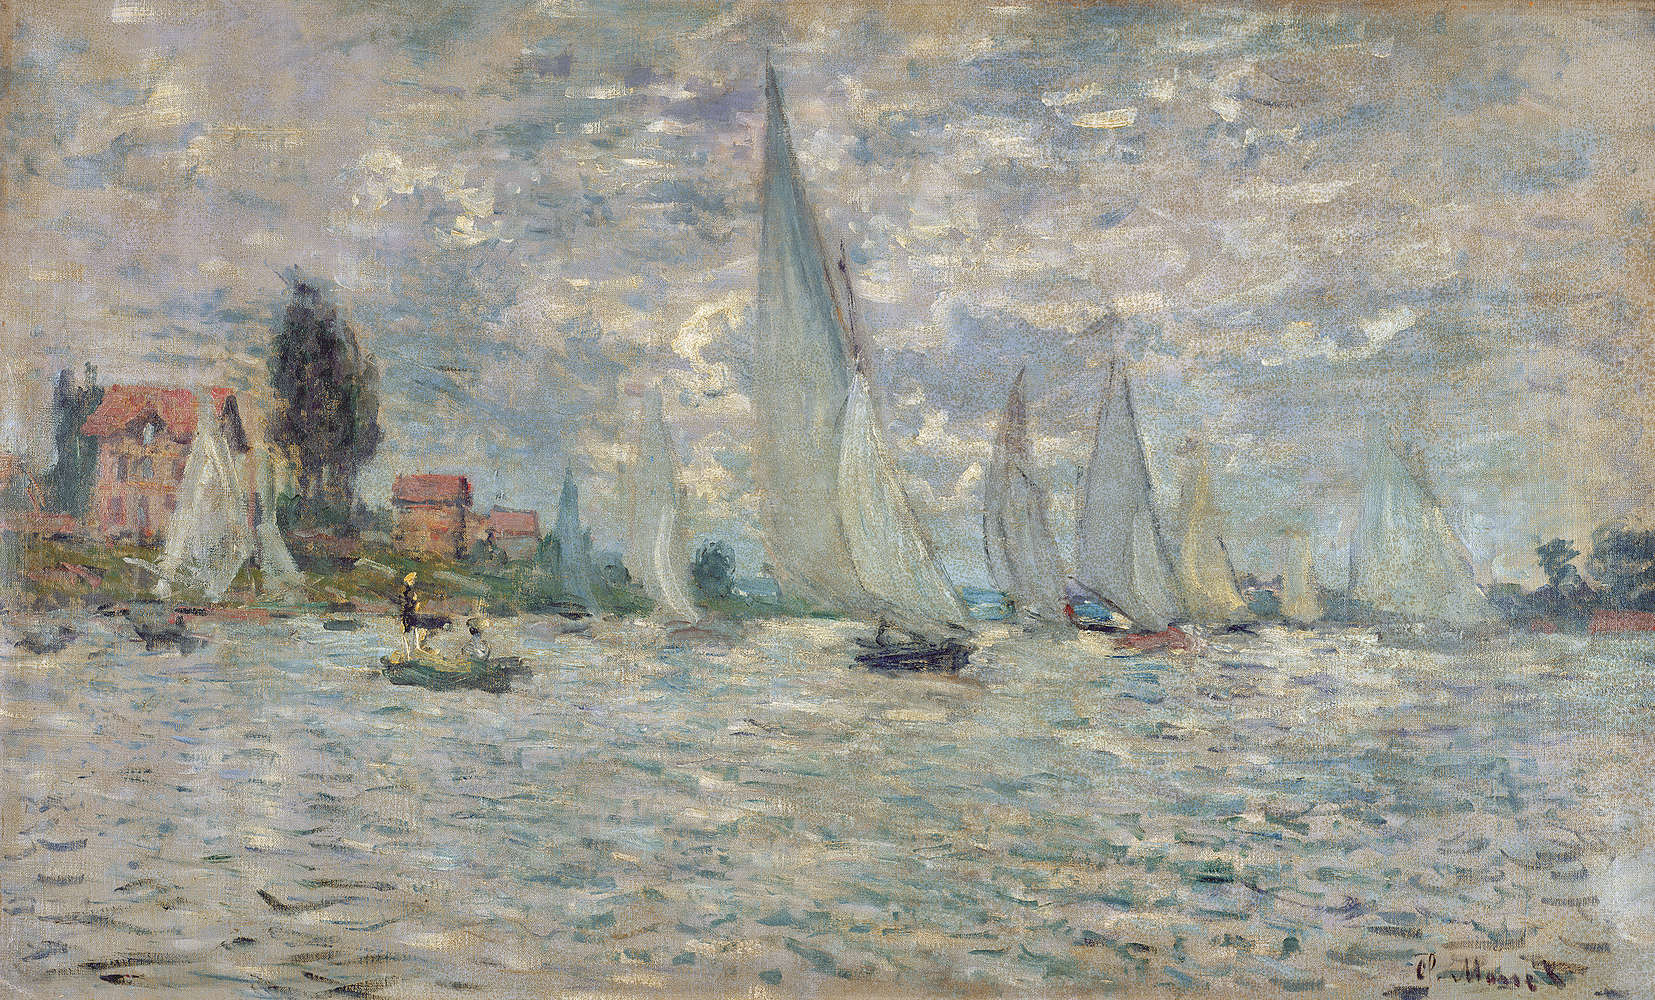             Il murale "Le barche o la regata di Argenteuil" di Claude Monet
        